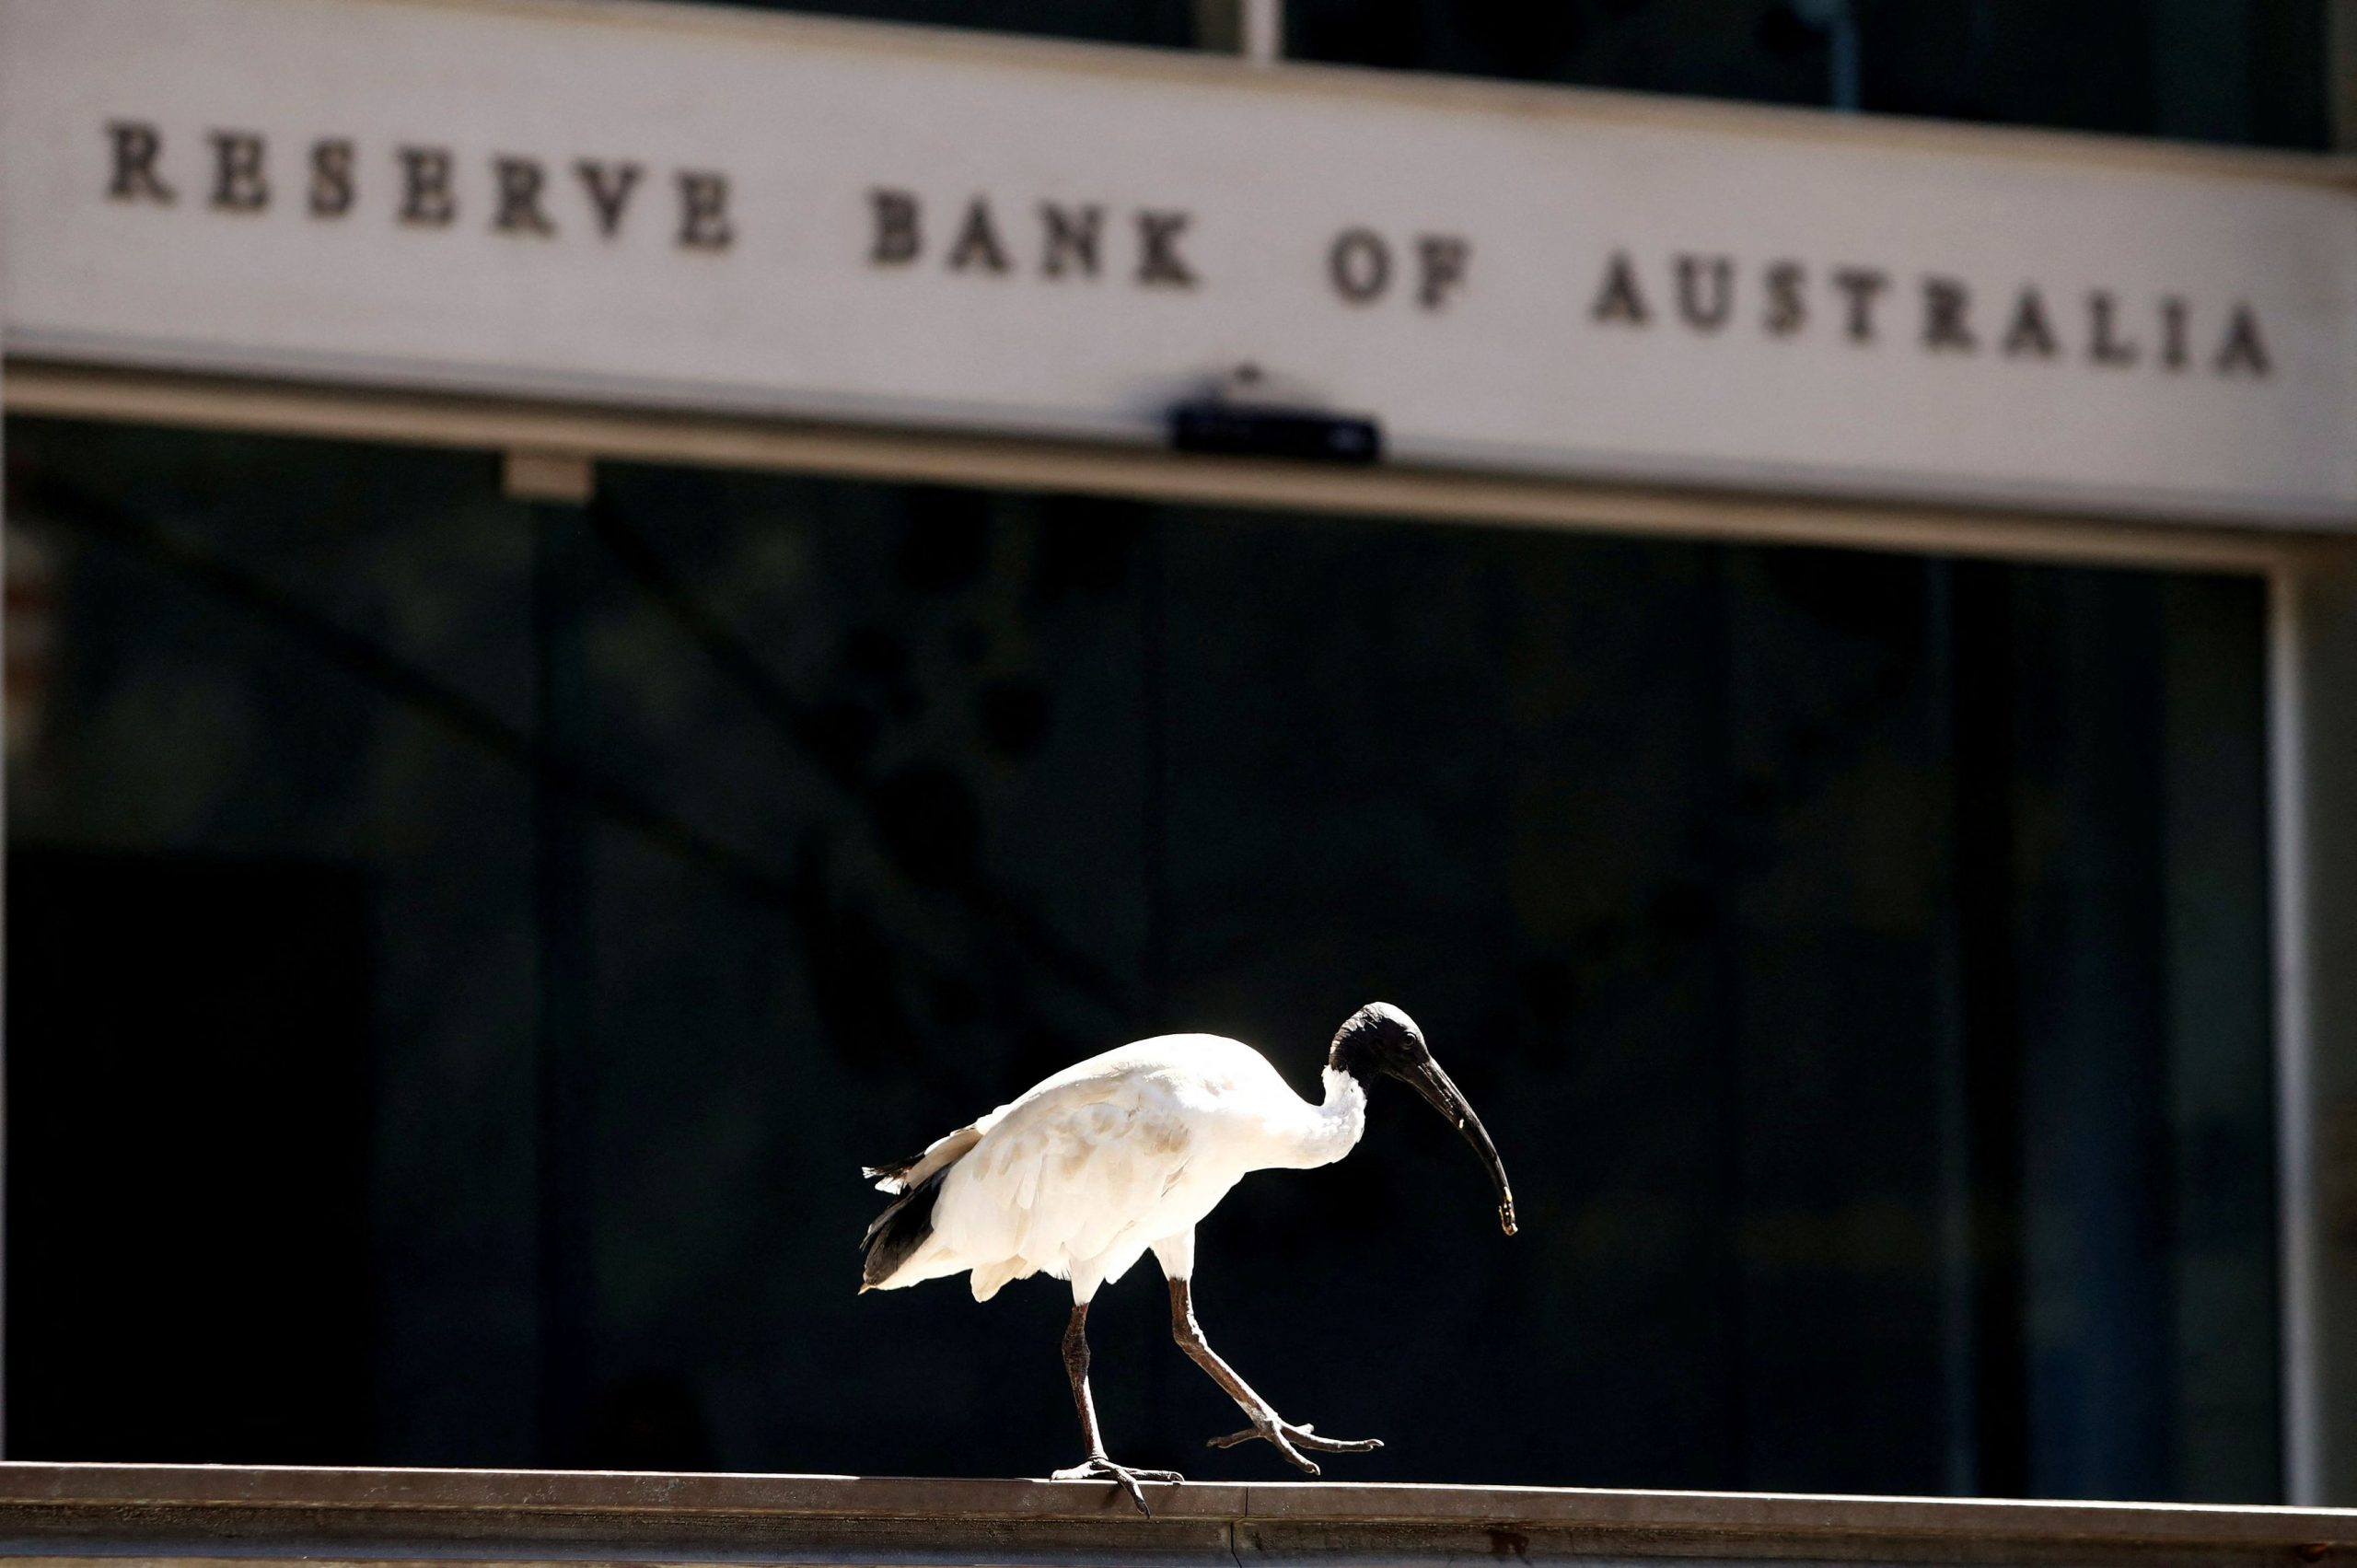 Αυστραλία: Αλλαγές στην Κεντρική Τράπεζα – Σε νέα επιτροπή περνά η επιτοκιακή πολιτική